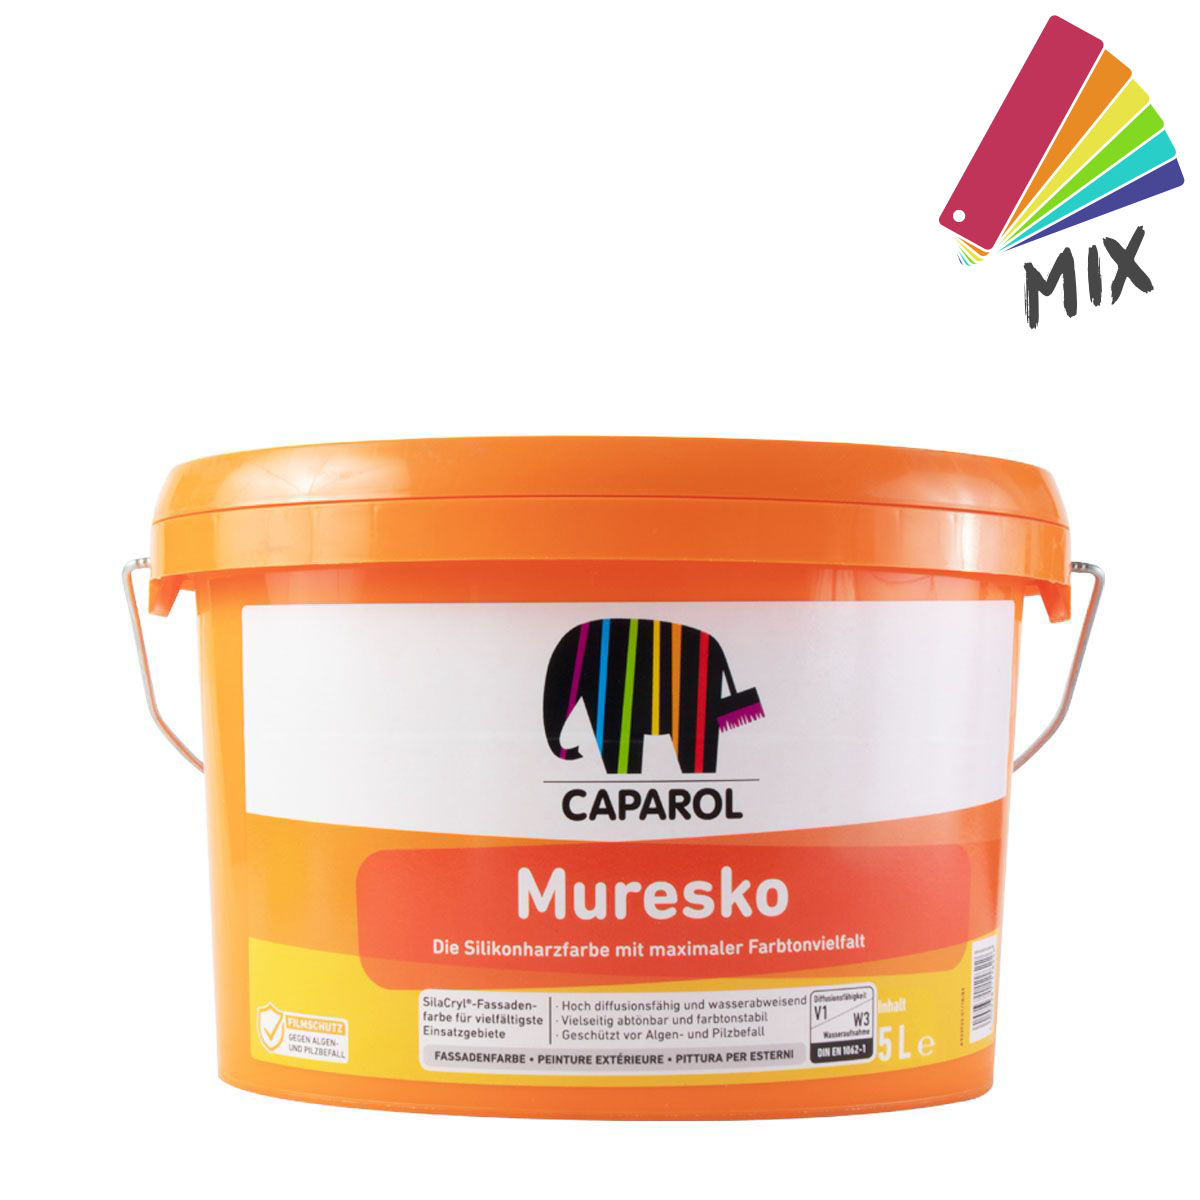 Caparol Muresko SilaCryl 5L MIX PG A , Siliconharz-Fassadenfarbe